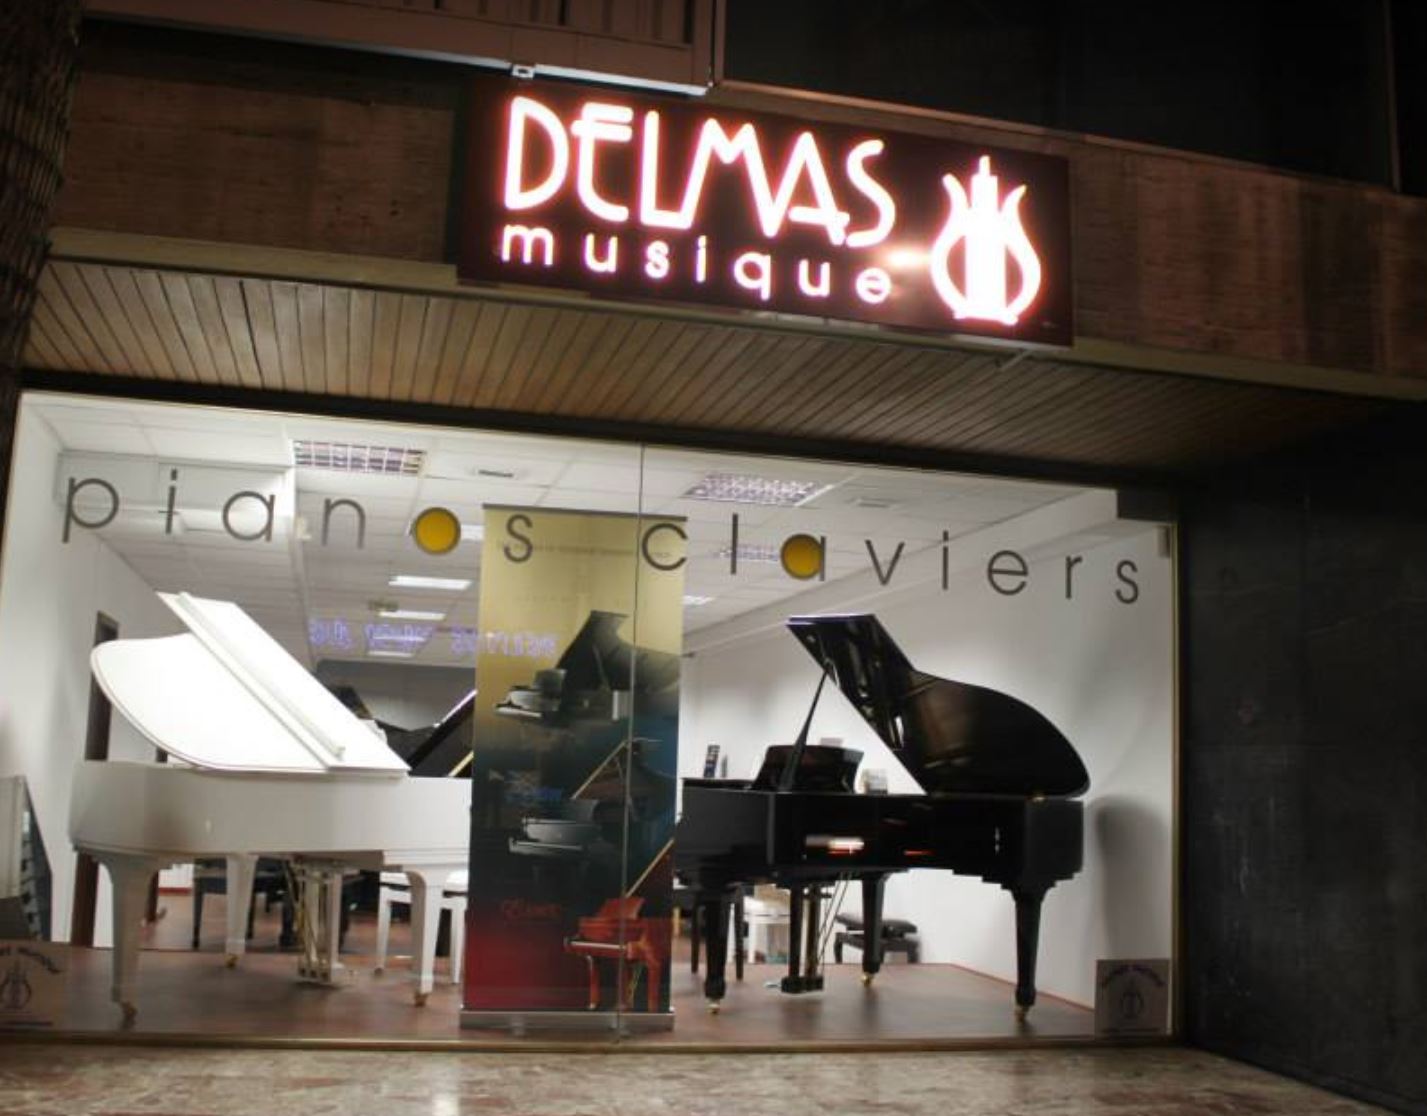 Vente & achat de Batterie et Percussions - Delmas Musique Perpignan